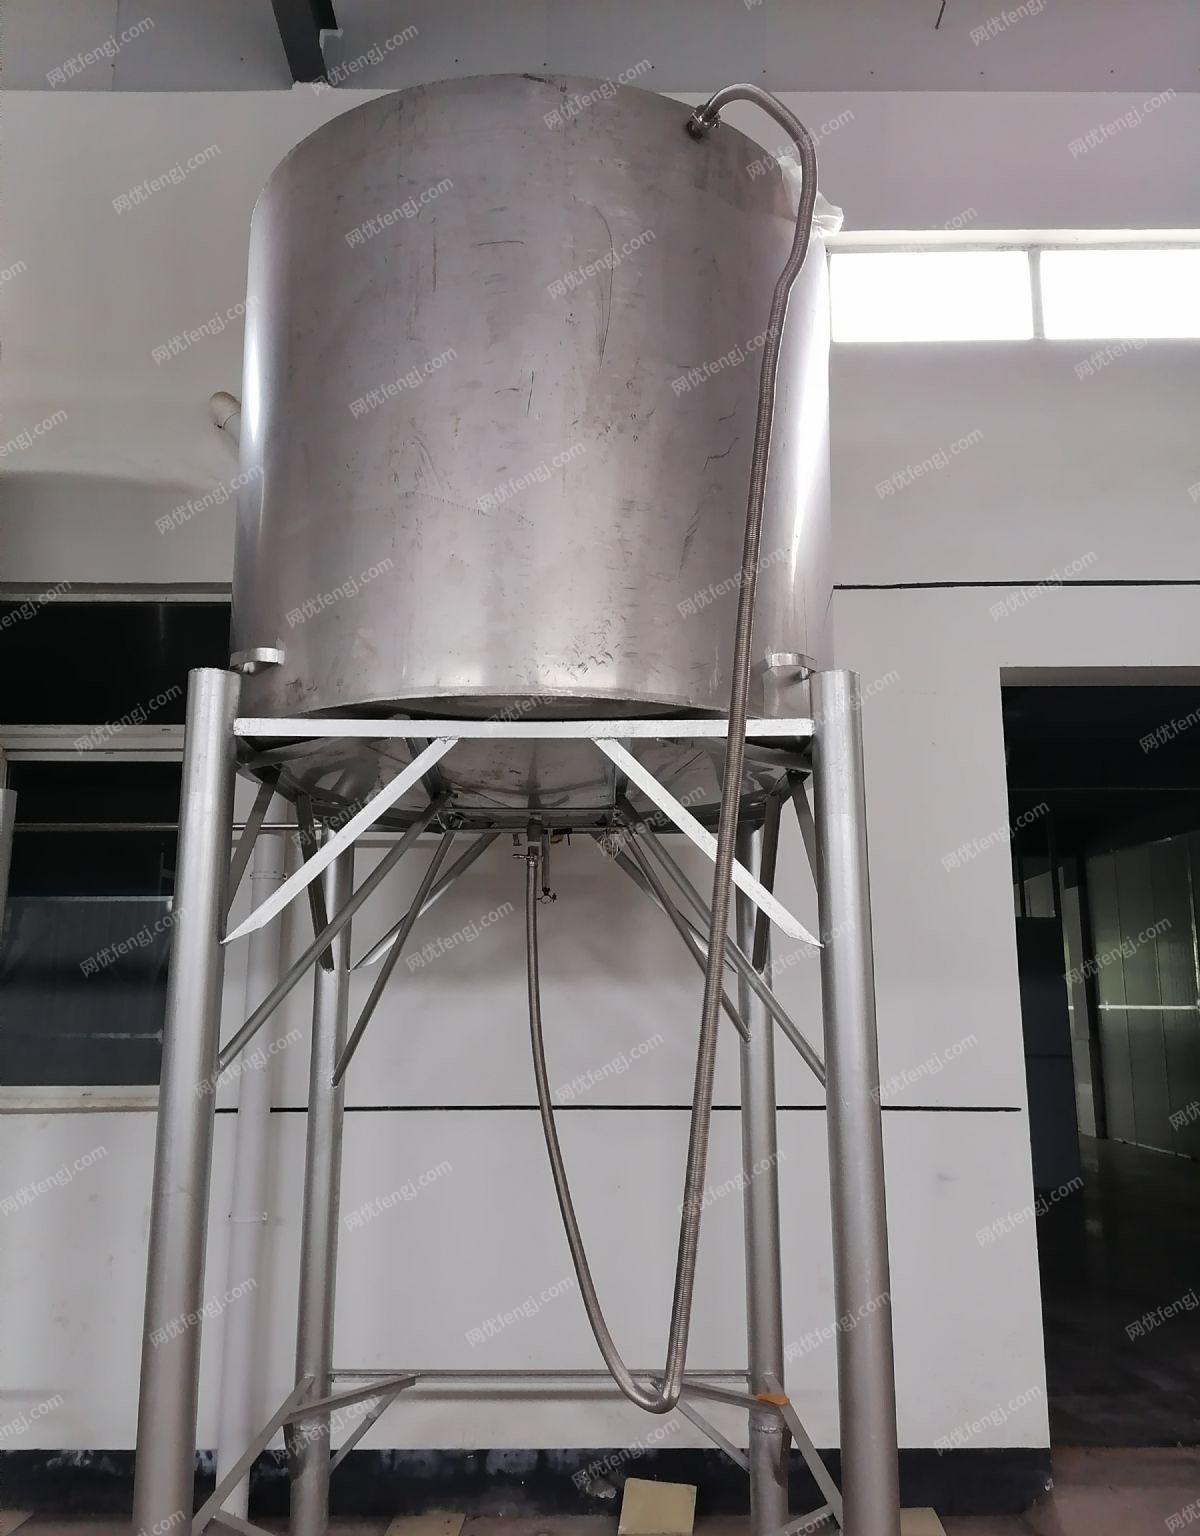 安徽安庆酒厂设备转让，30吨储酒罐8个，2吨高位罐2个，20吨储酒罐1个，水处理机和纯水罐